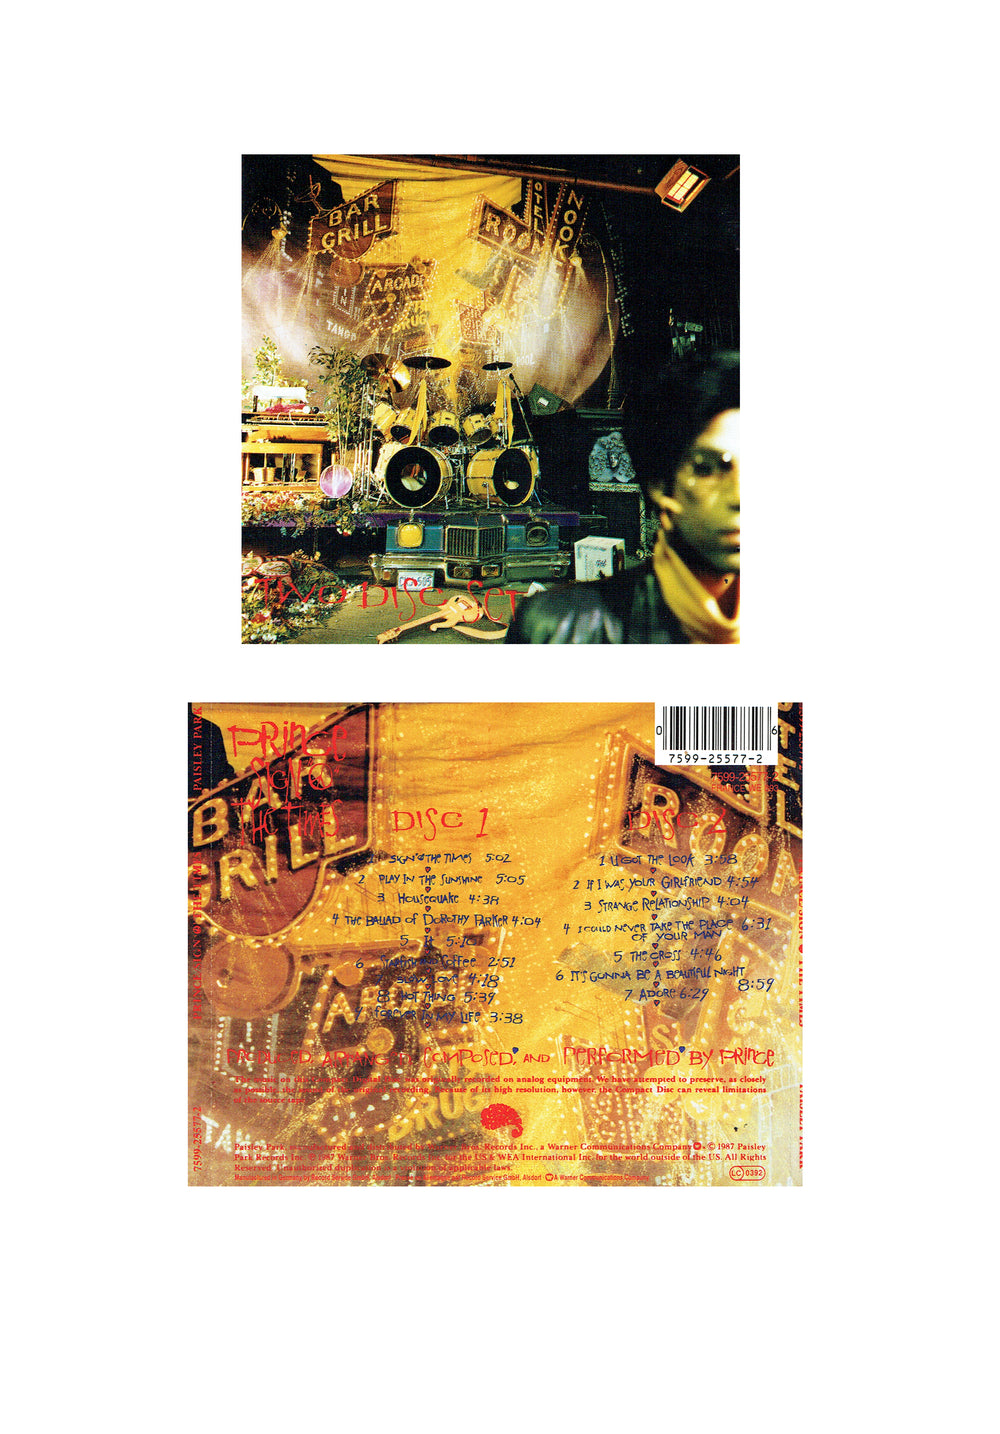 Prince – Sign O The Times CD Album Slim Case Preloved: 1988